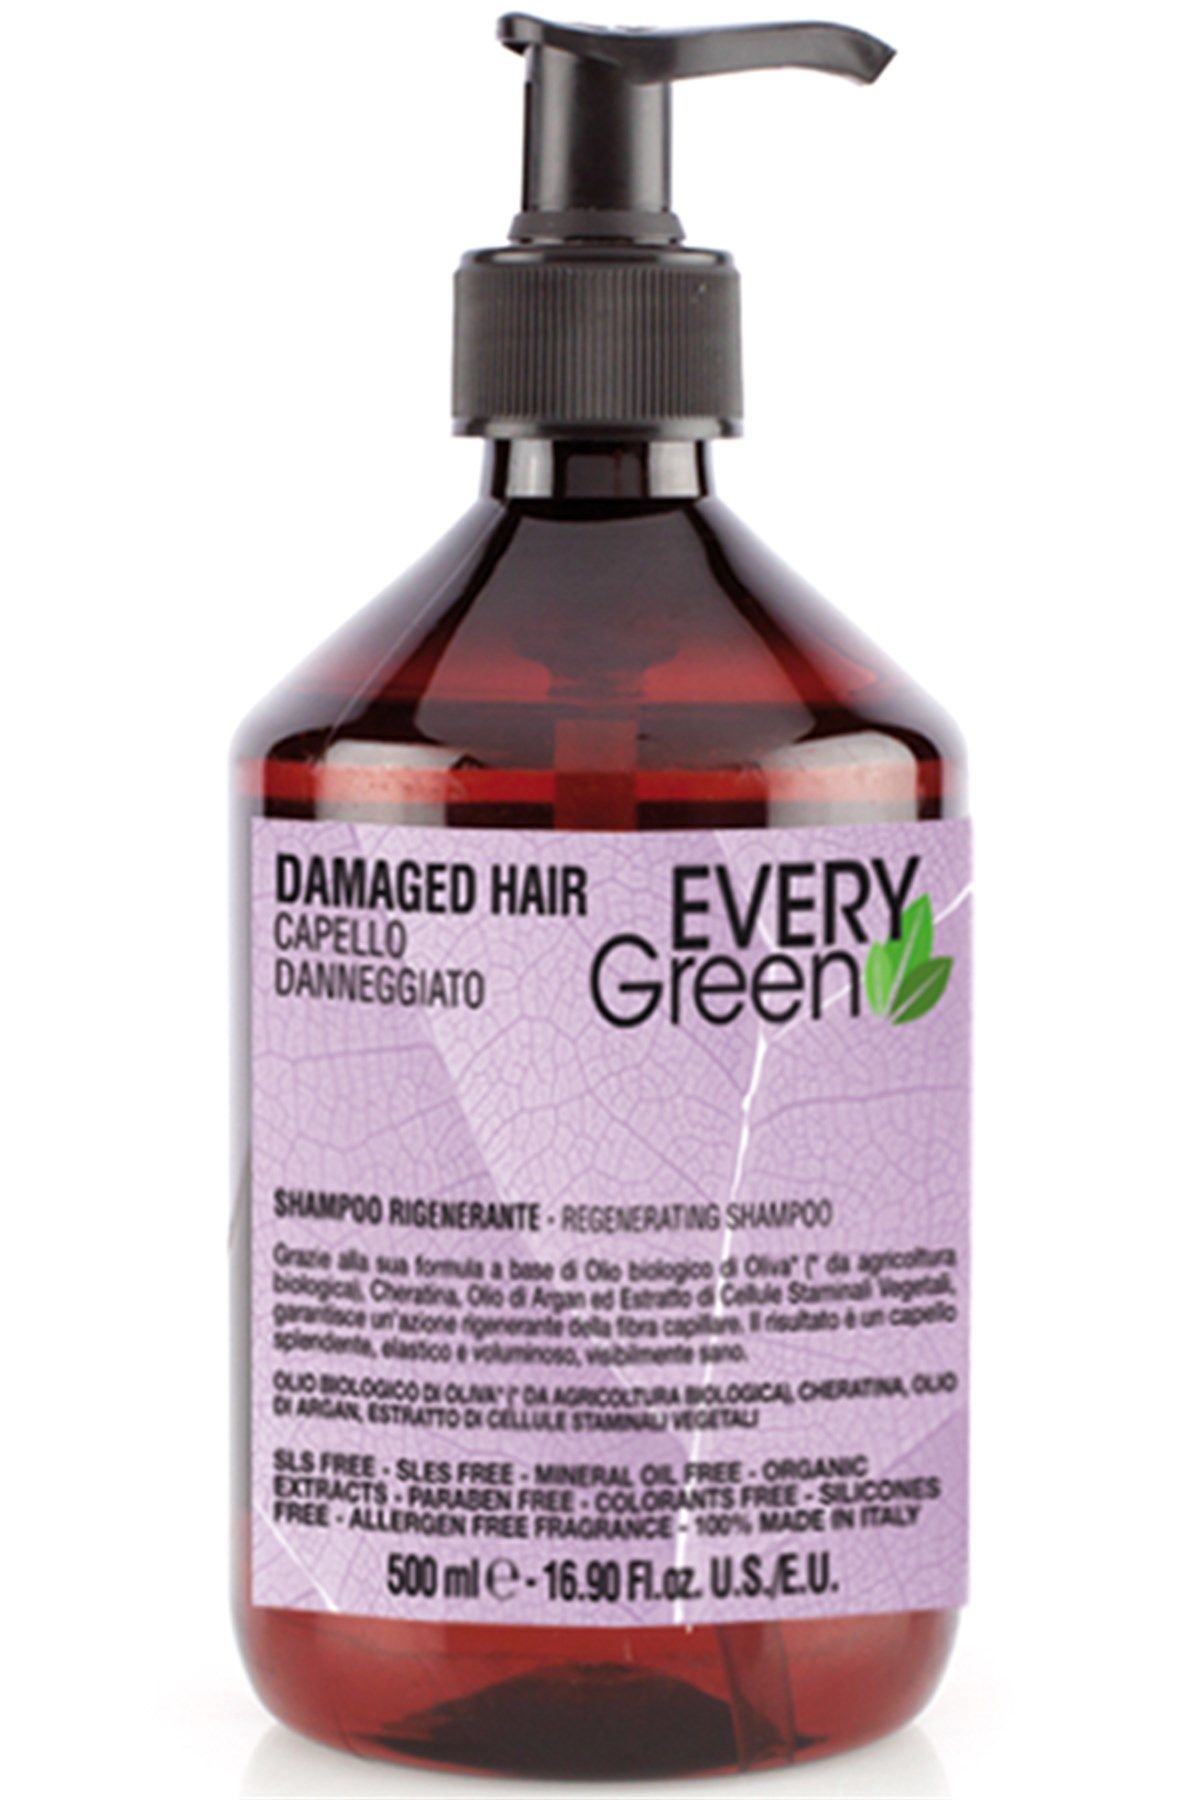 EveryGreen Damaged Hair Regenerating Shampoo - Yıpranmış Saçlara Özel Bakım Şampuanı 500 Ml.